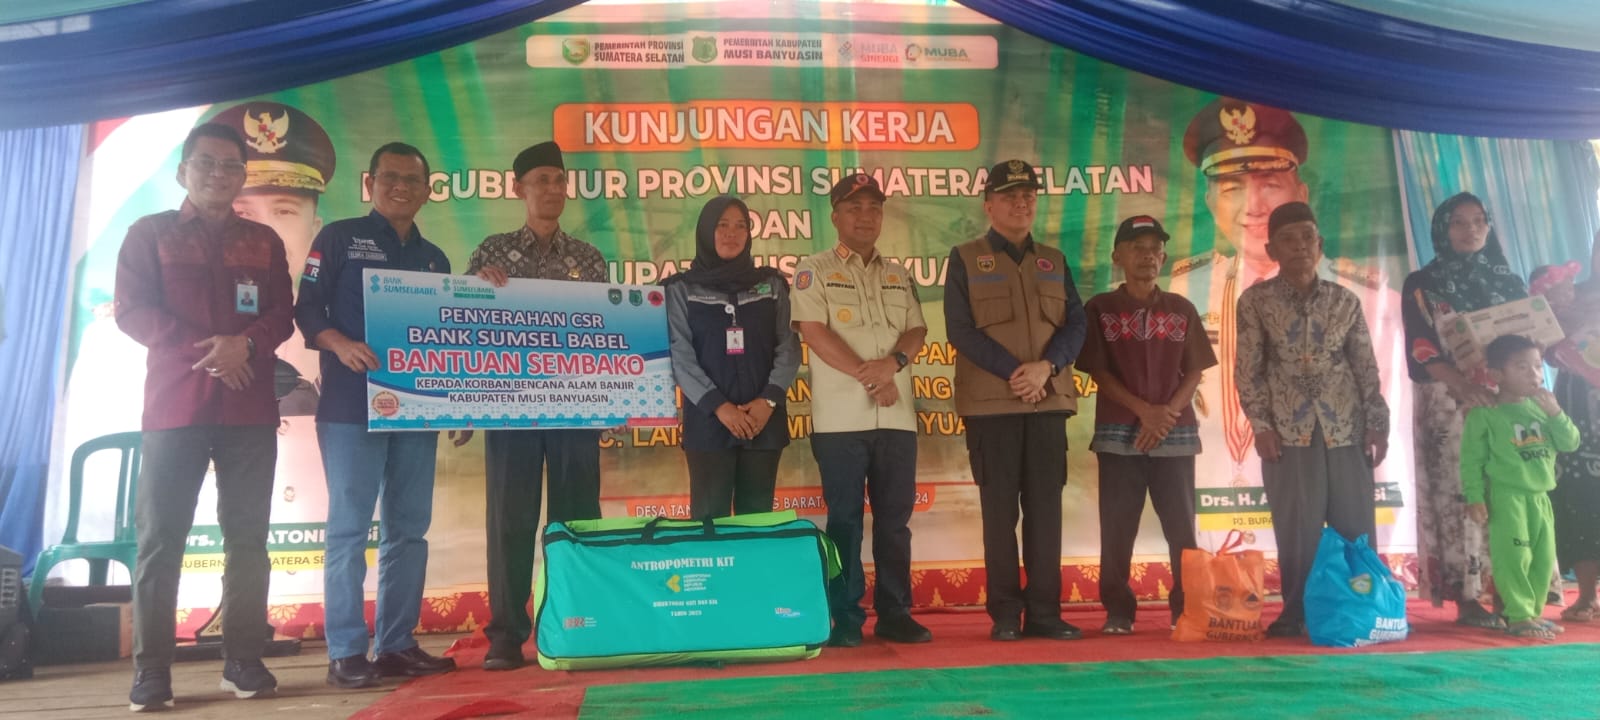 Bank Sumsel Babel Salurkan Ribuan Paket Sembako Bantu Warga Korban Banjir 3 Kabupaten di Sumatera Selatan